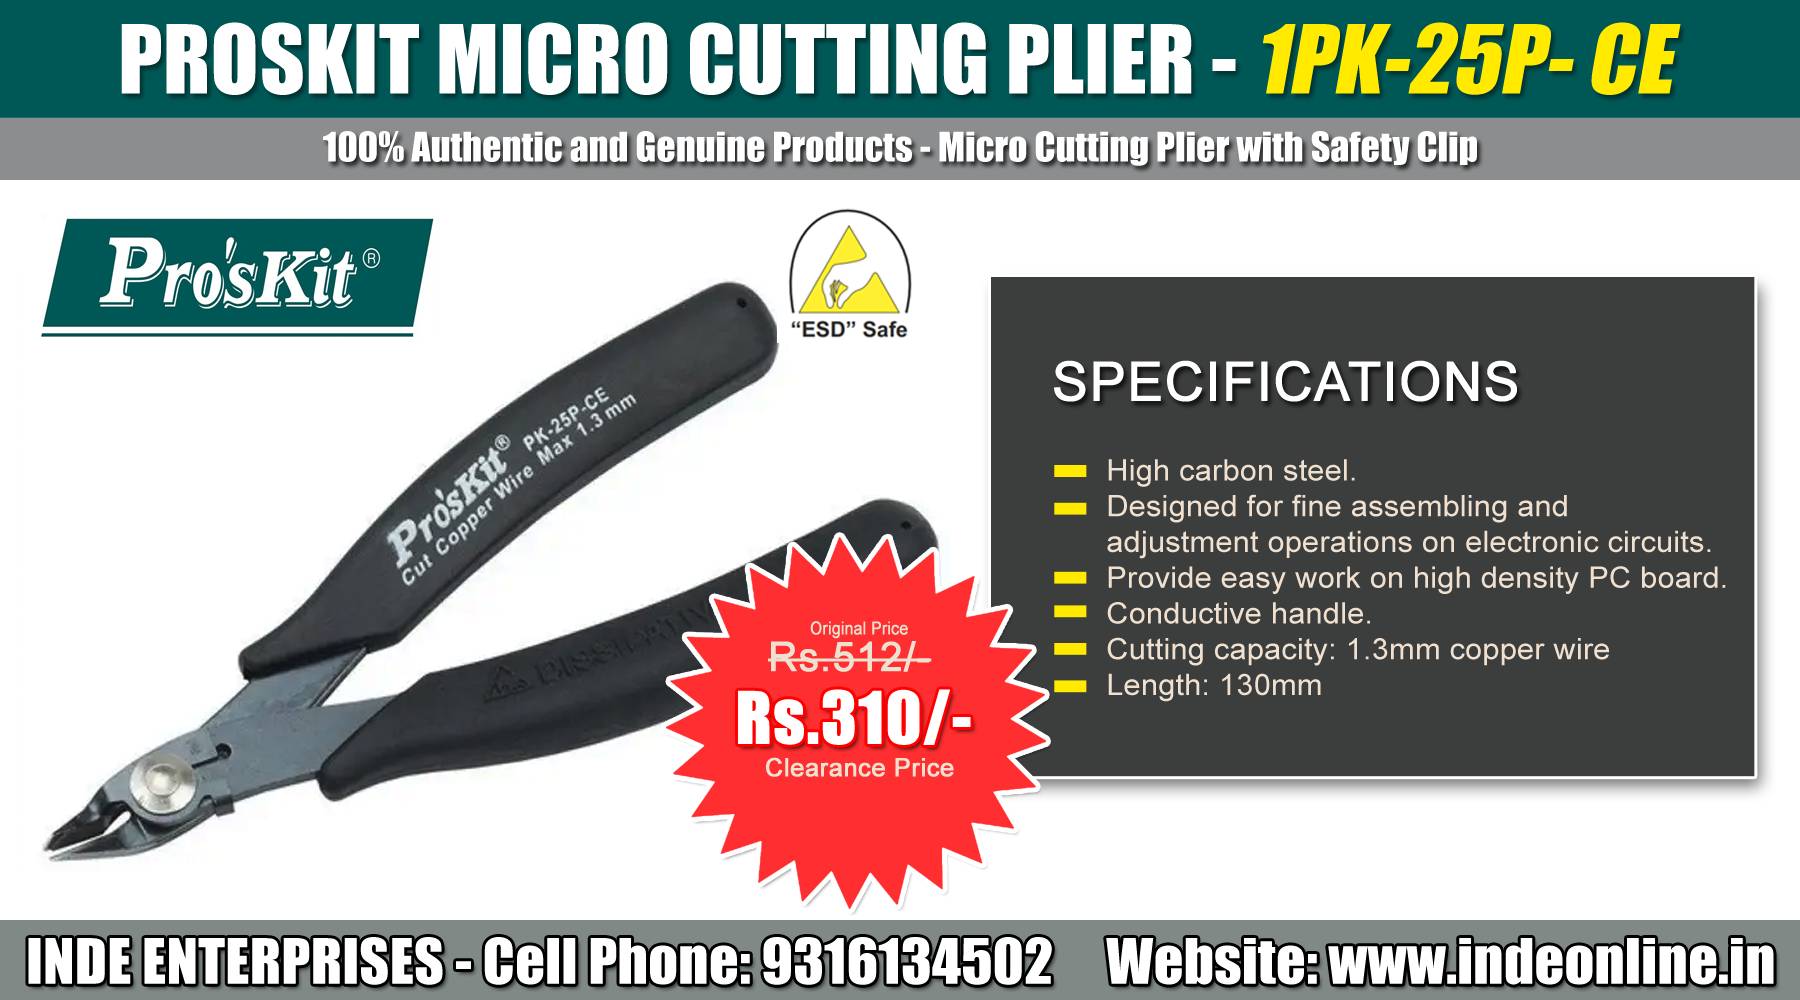 Proskit Micro Cutting Plier 1PK-25P- CE Price Rs.310/-